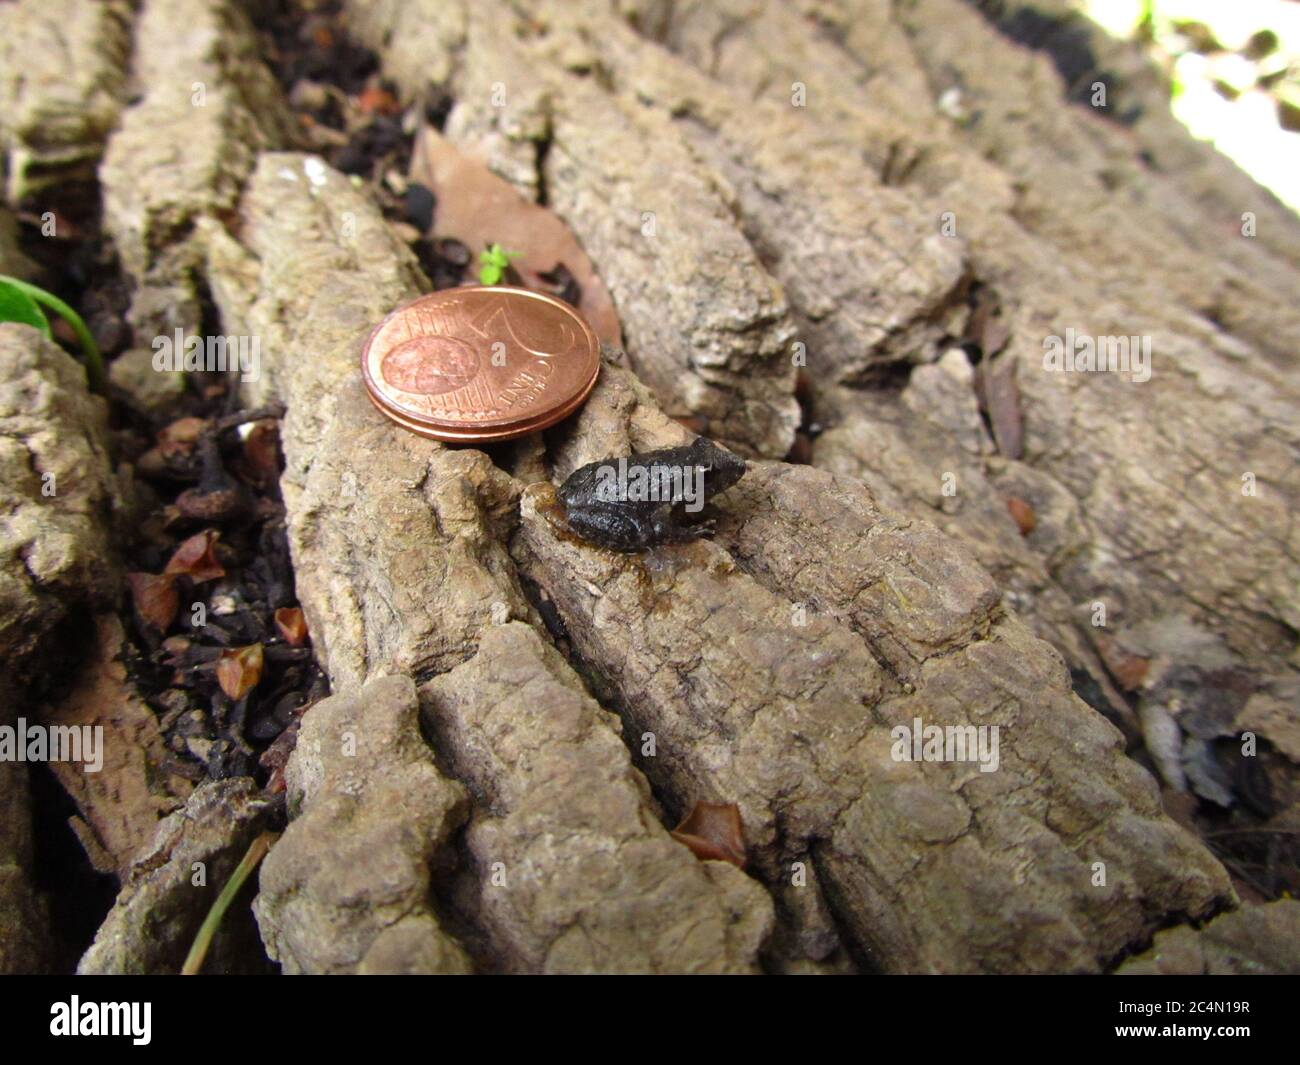 BUSKETT, RABAT, MALTA - 16 marzo 2014: Confronto tra la taglia di un piccolo froglotto della rana dipinta maltese, Discolosso pictus, e una moneta da due cent, Foto Stock